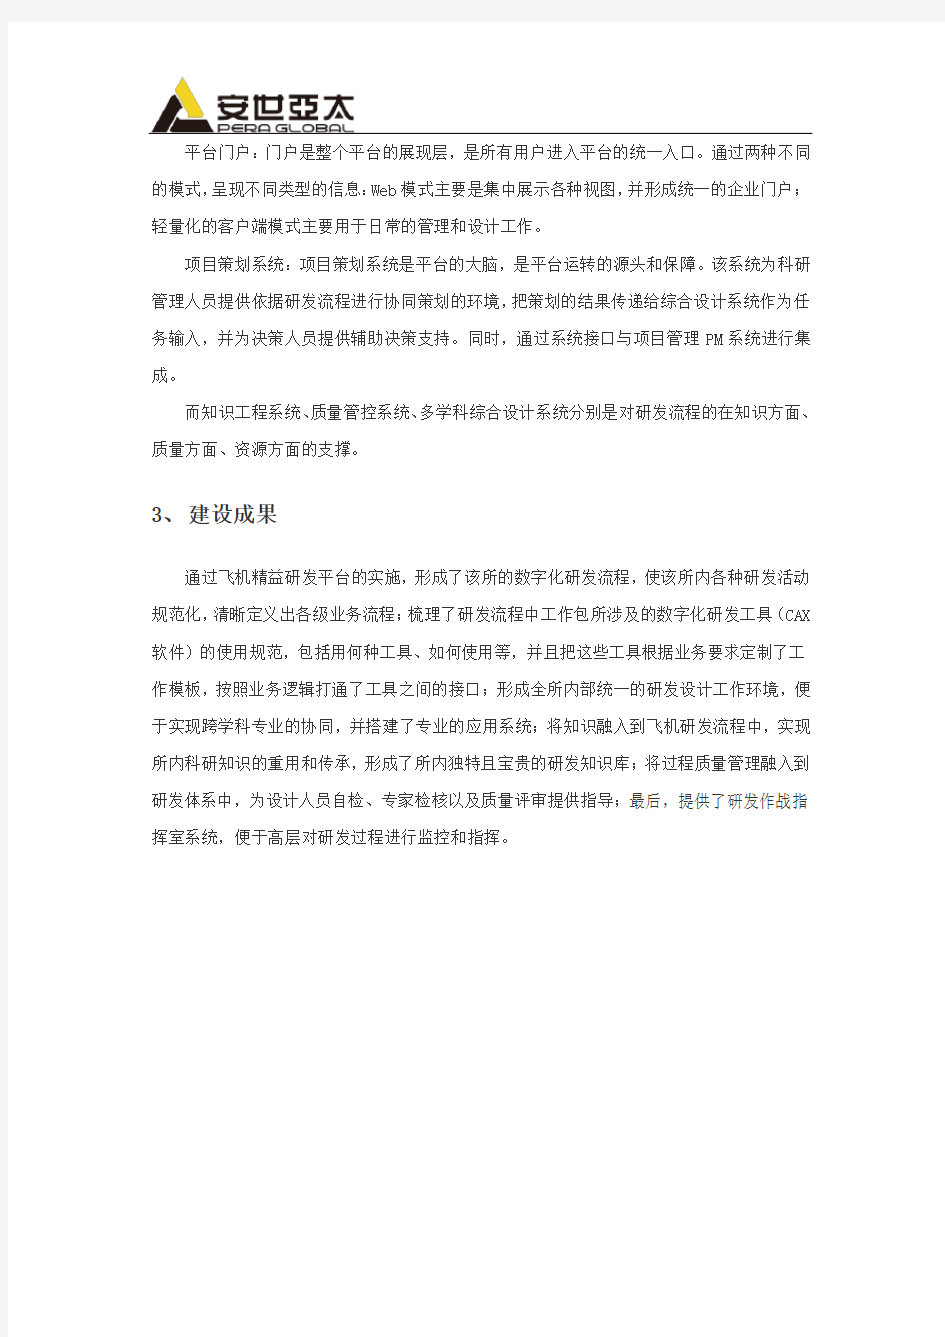 中国航空某设计研究所研发流程管理实例